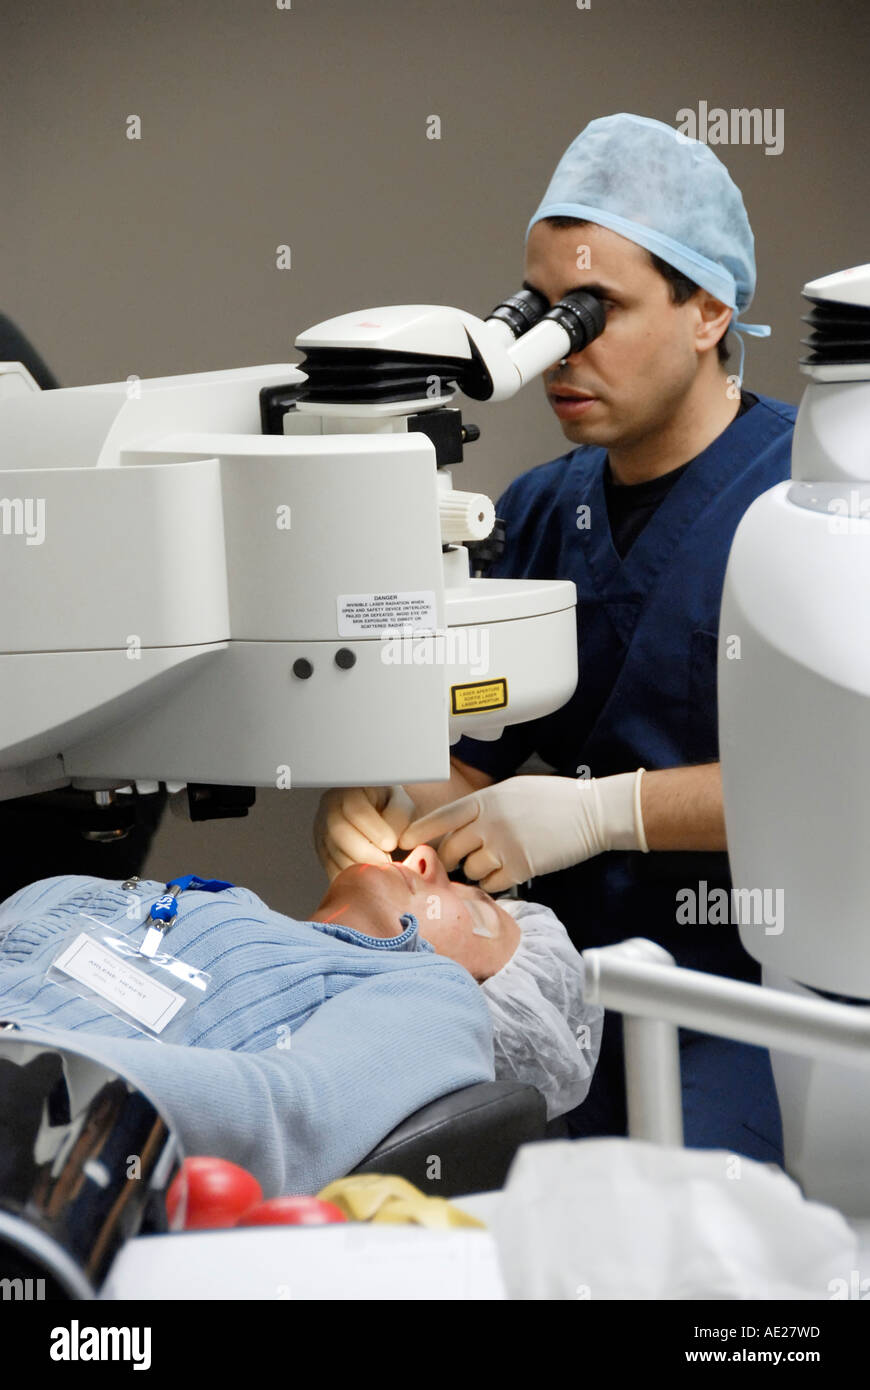 Центр коррекции глаз. Лазерная коррекция зрения. Лазерная операция на глаза. Лазерная коррекция ЗРН.